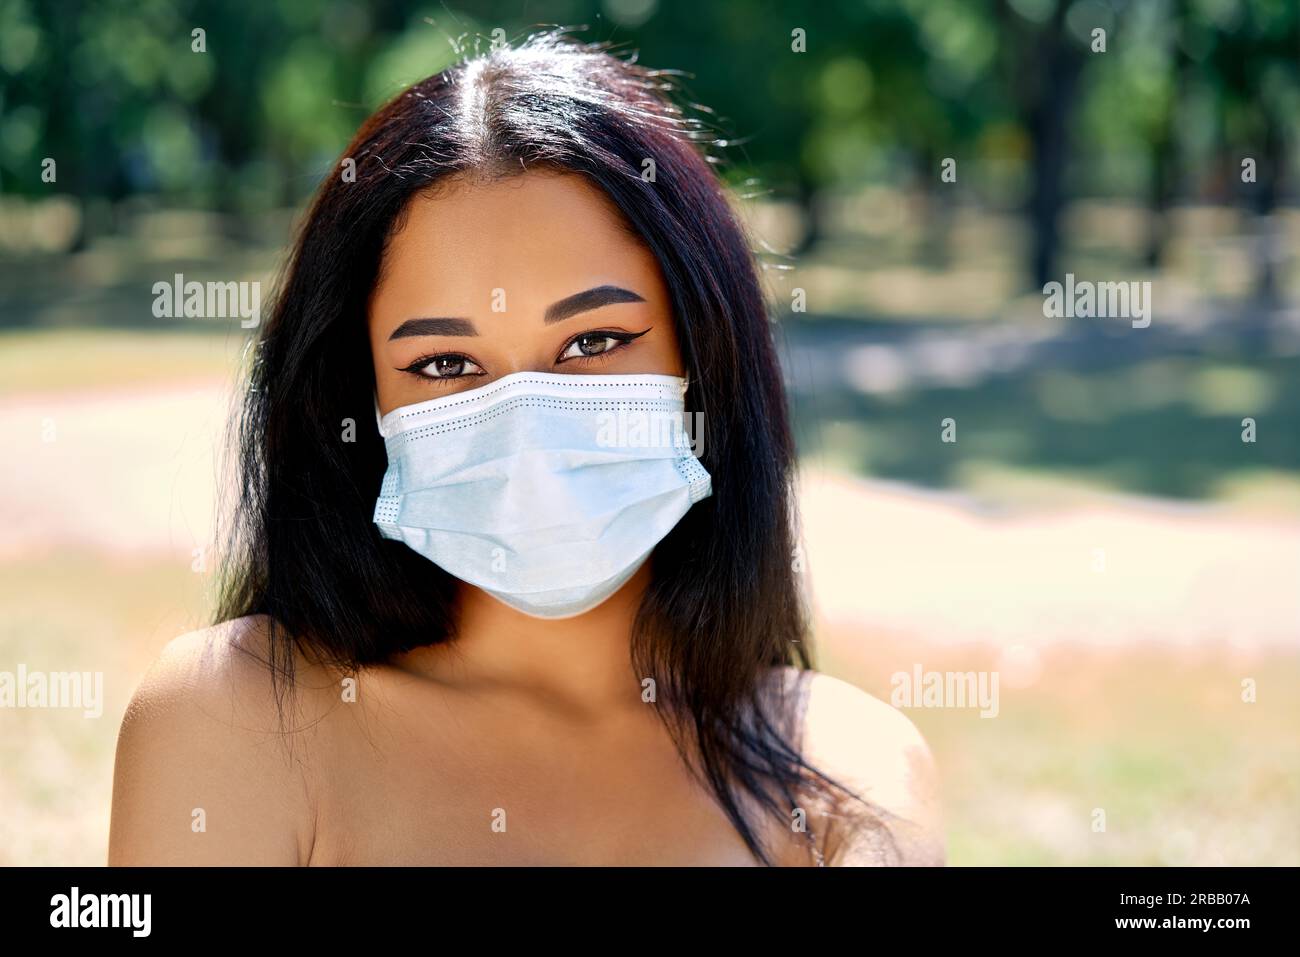 Nahaufnahme Porträt der afroamerikanischen Frau in Virenschutz Gesichtsmaske. Coronavirus COVID-19 Pandemie-Krankheit, Gesundheitskonzept Stockfoto